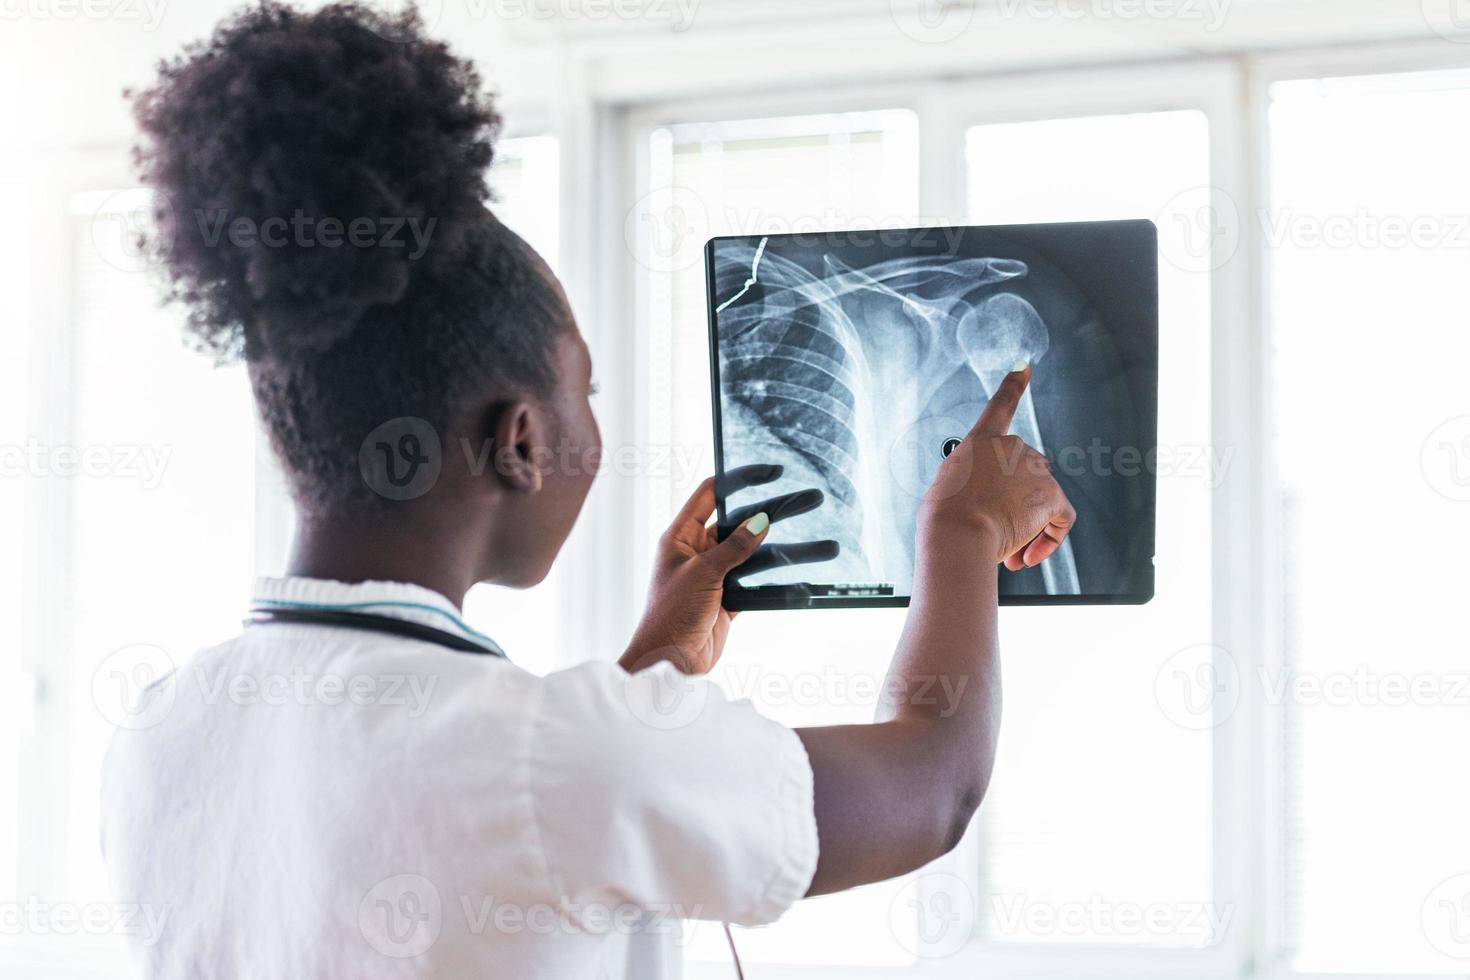 röntgenfilmbild mit arzt für medizinische und radiologische diagnose der weiblichen patientengesundheit bei krankheiten und knochenkrebserkrankungen, gesundheitskrankenhausservicekonzept foto